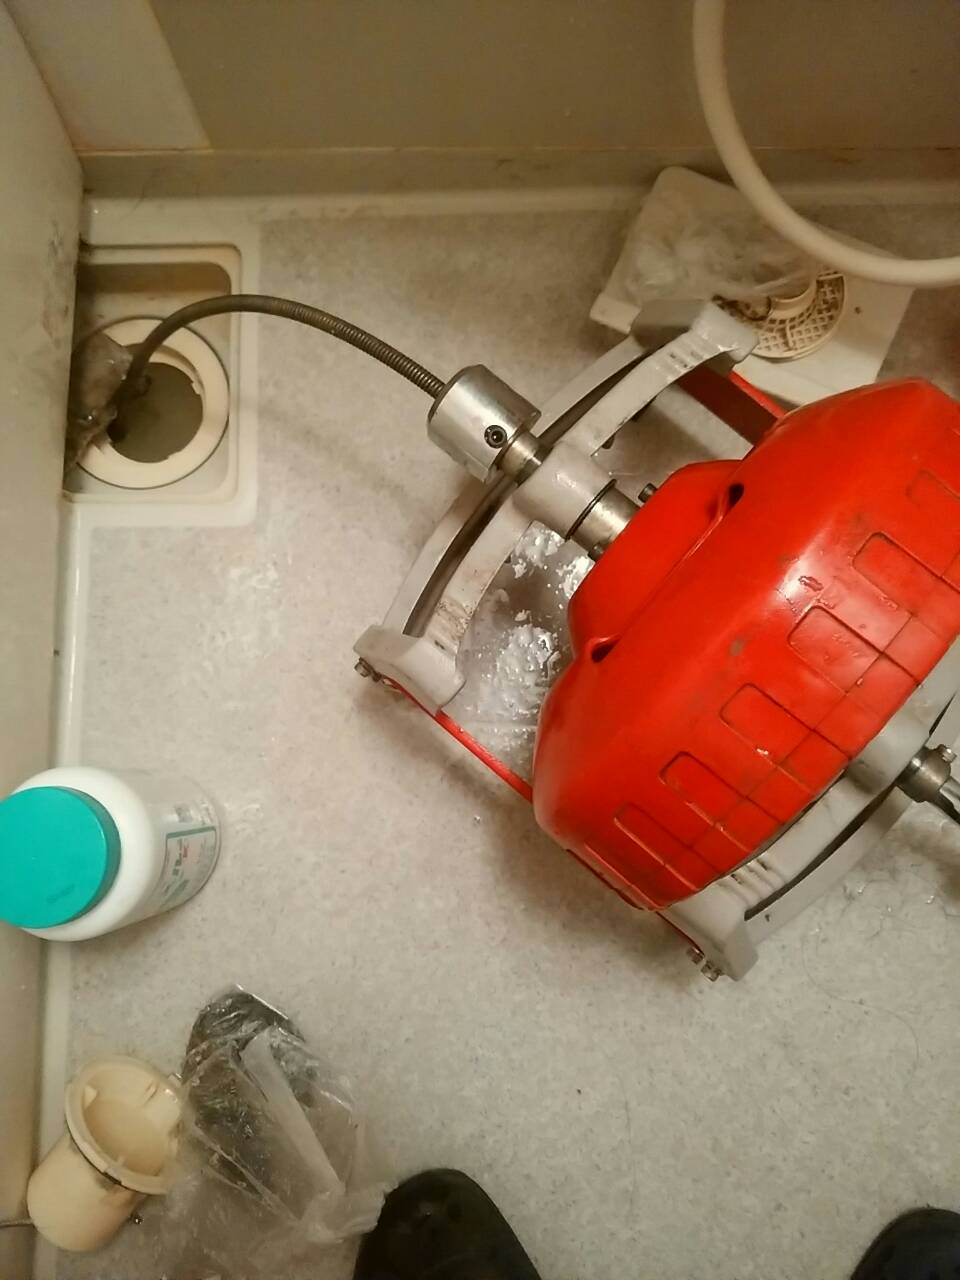 お風呂の排水口が流れなくなっていた為、ワイヤーを使い排水口のつまりを除去